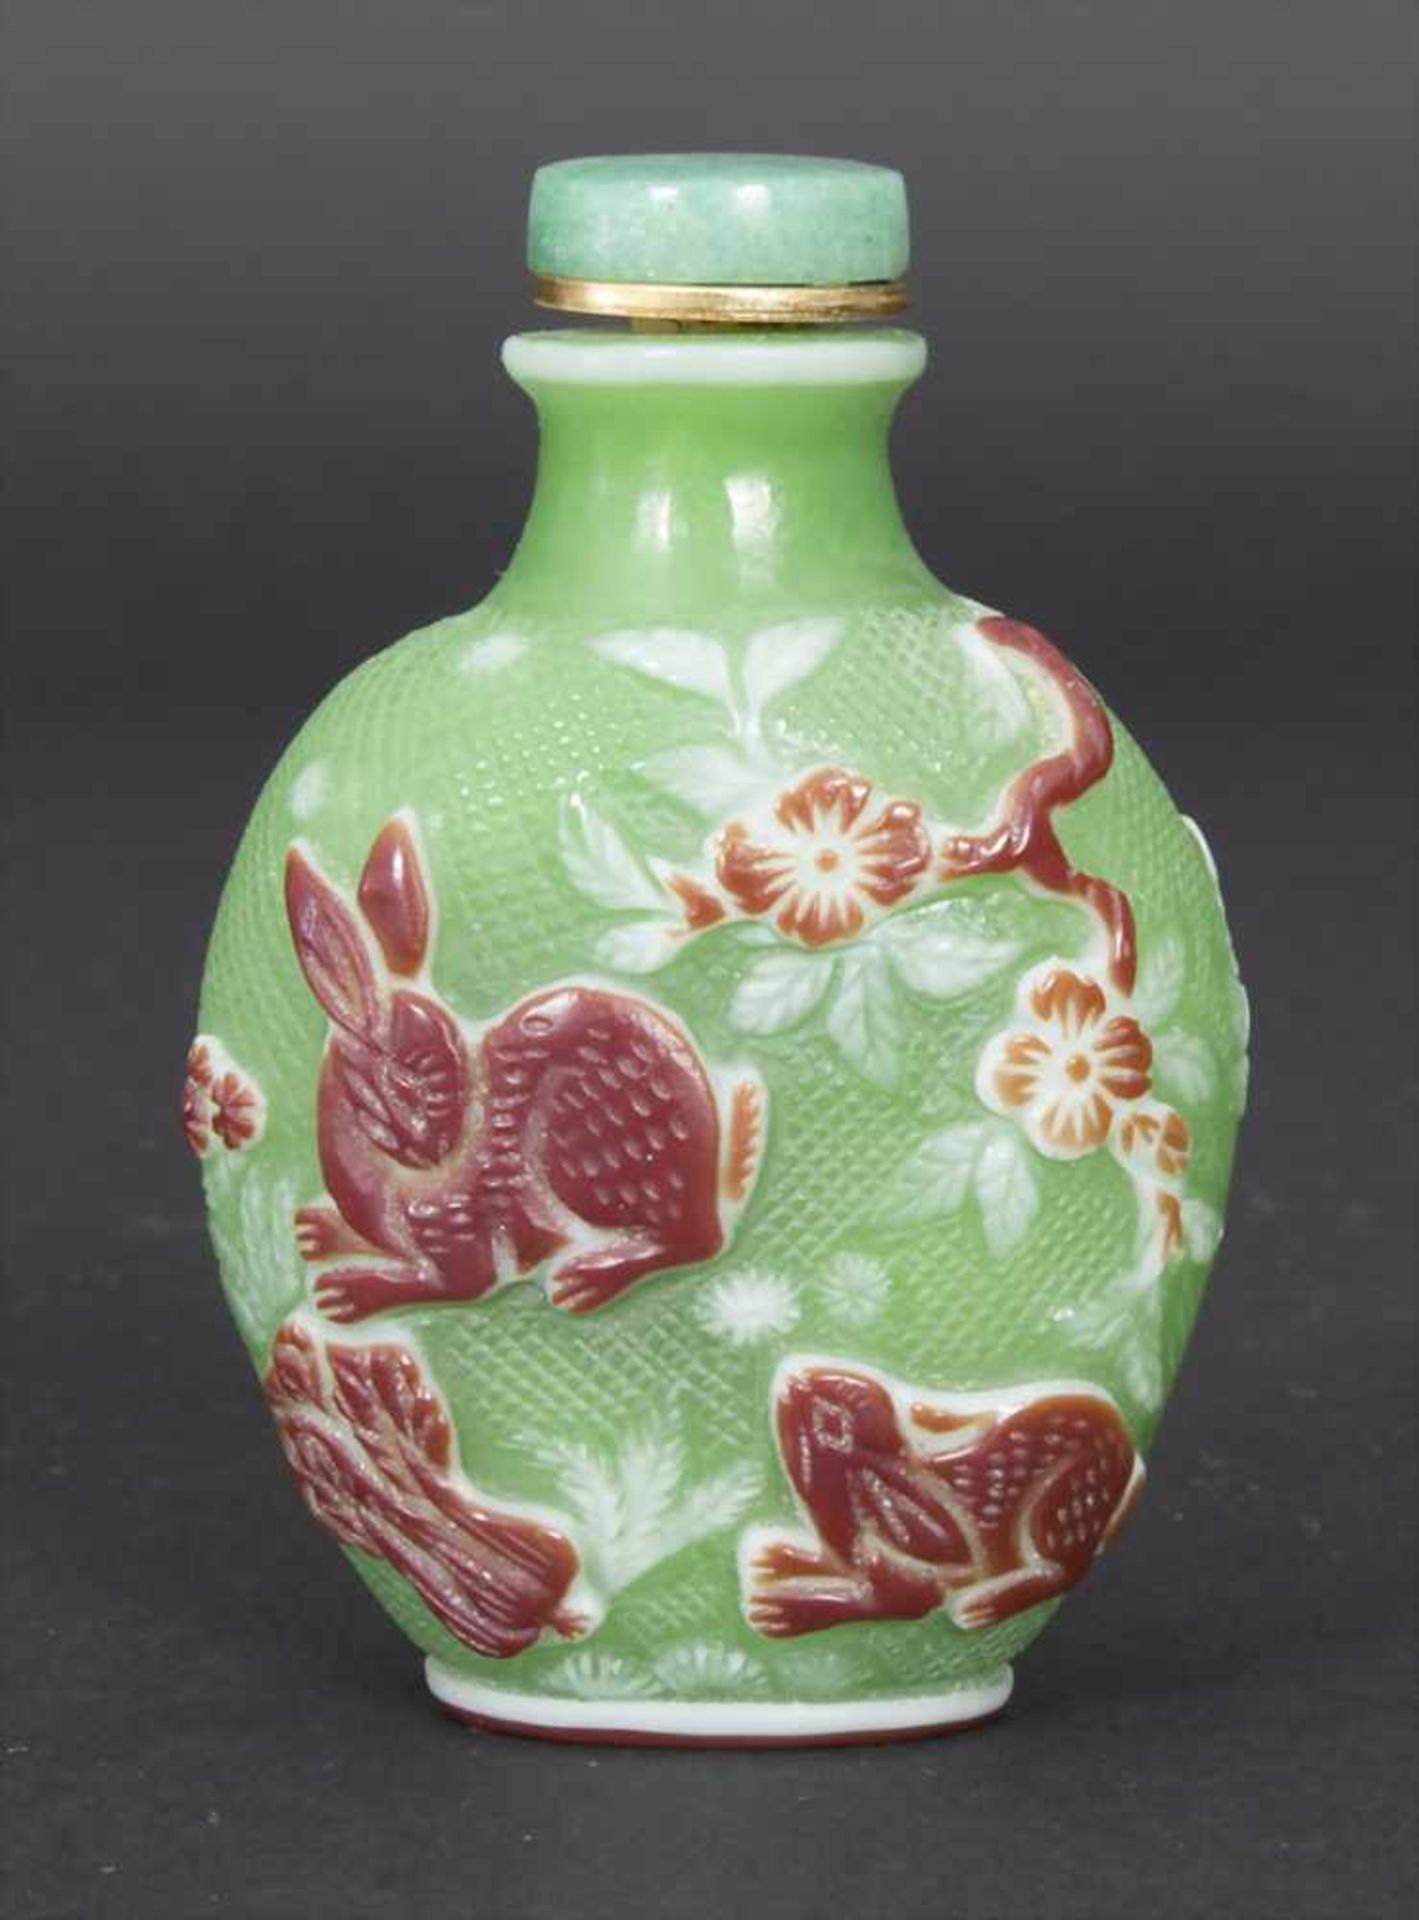 Snuff Bottle, China, um 1900Material: Glas überfangen, Jadestöpsel, Dekor mit Hasen, Wachteln und